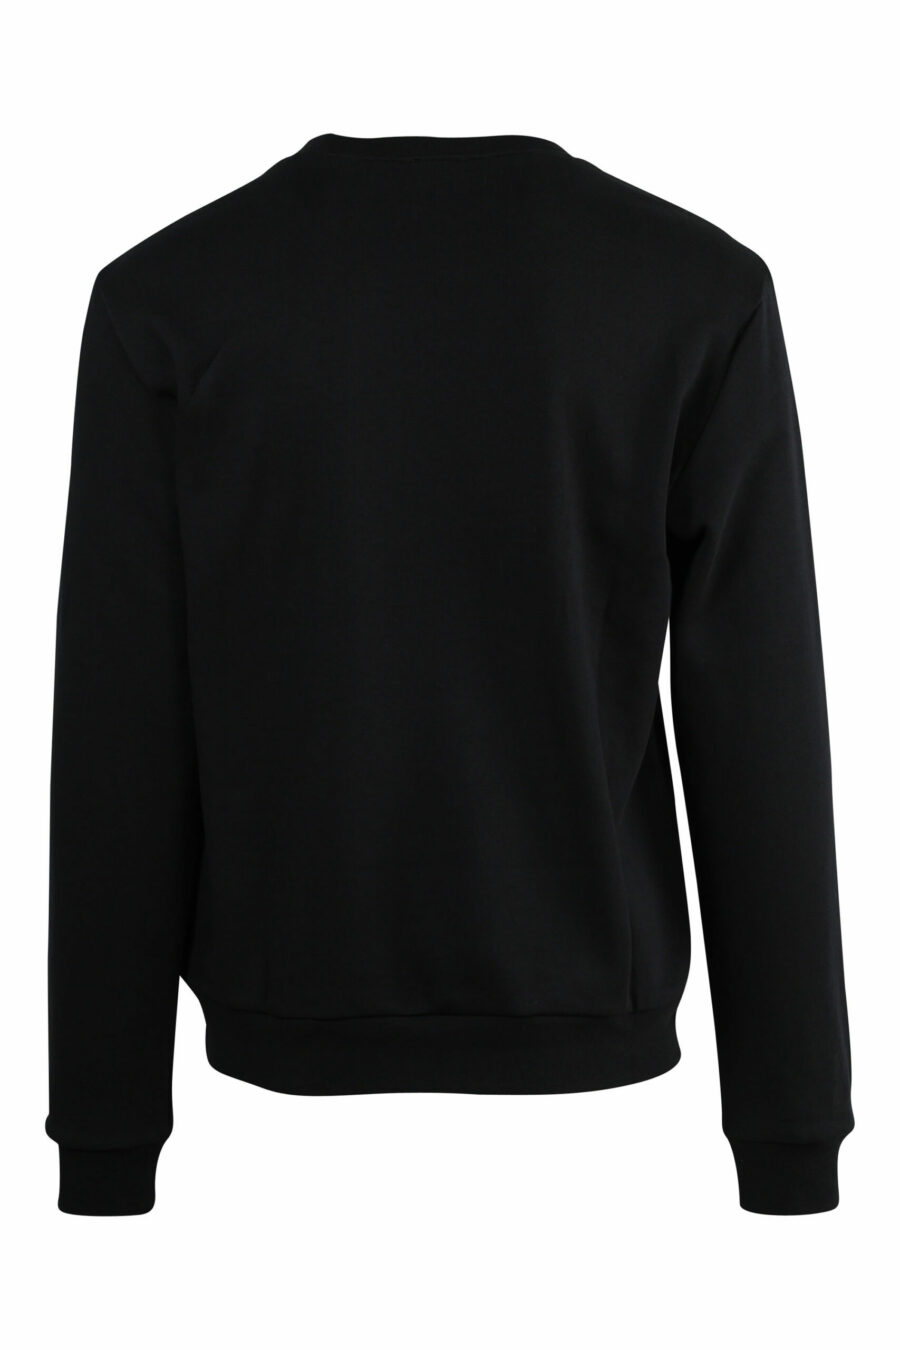 Black sweatshirt with white "lux identity" maxilogo - 8057767667085 scaled